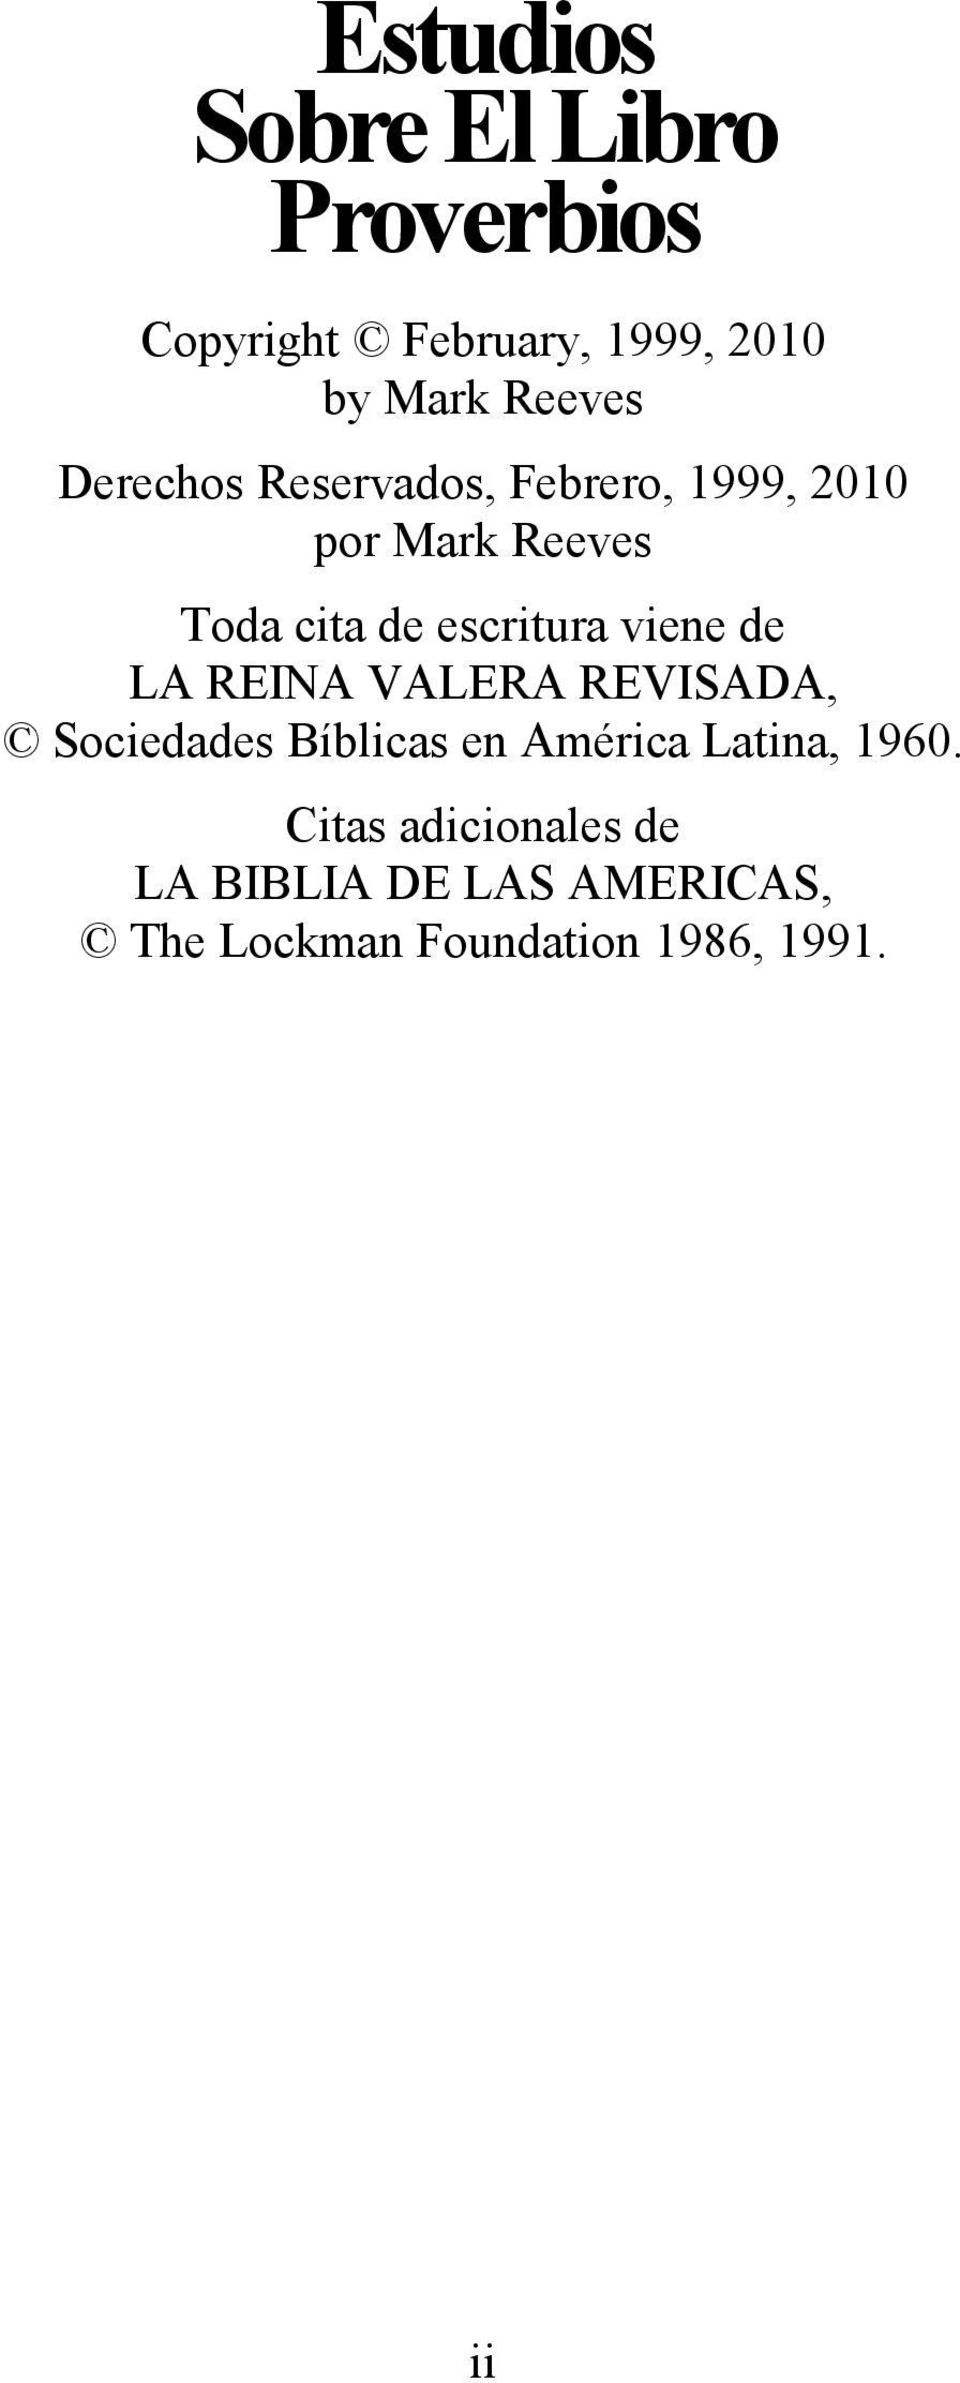 viene de LA REINA VALERA REVISADA, Sociedades Bíblicas en América Latina, 1960.